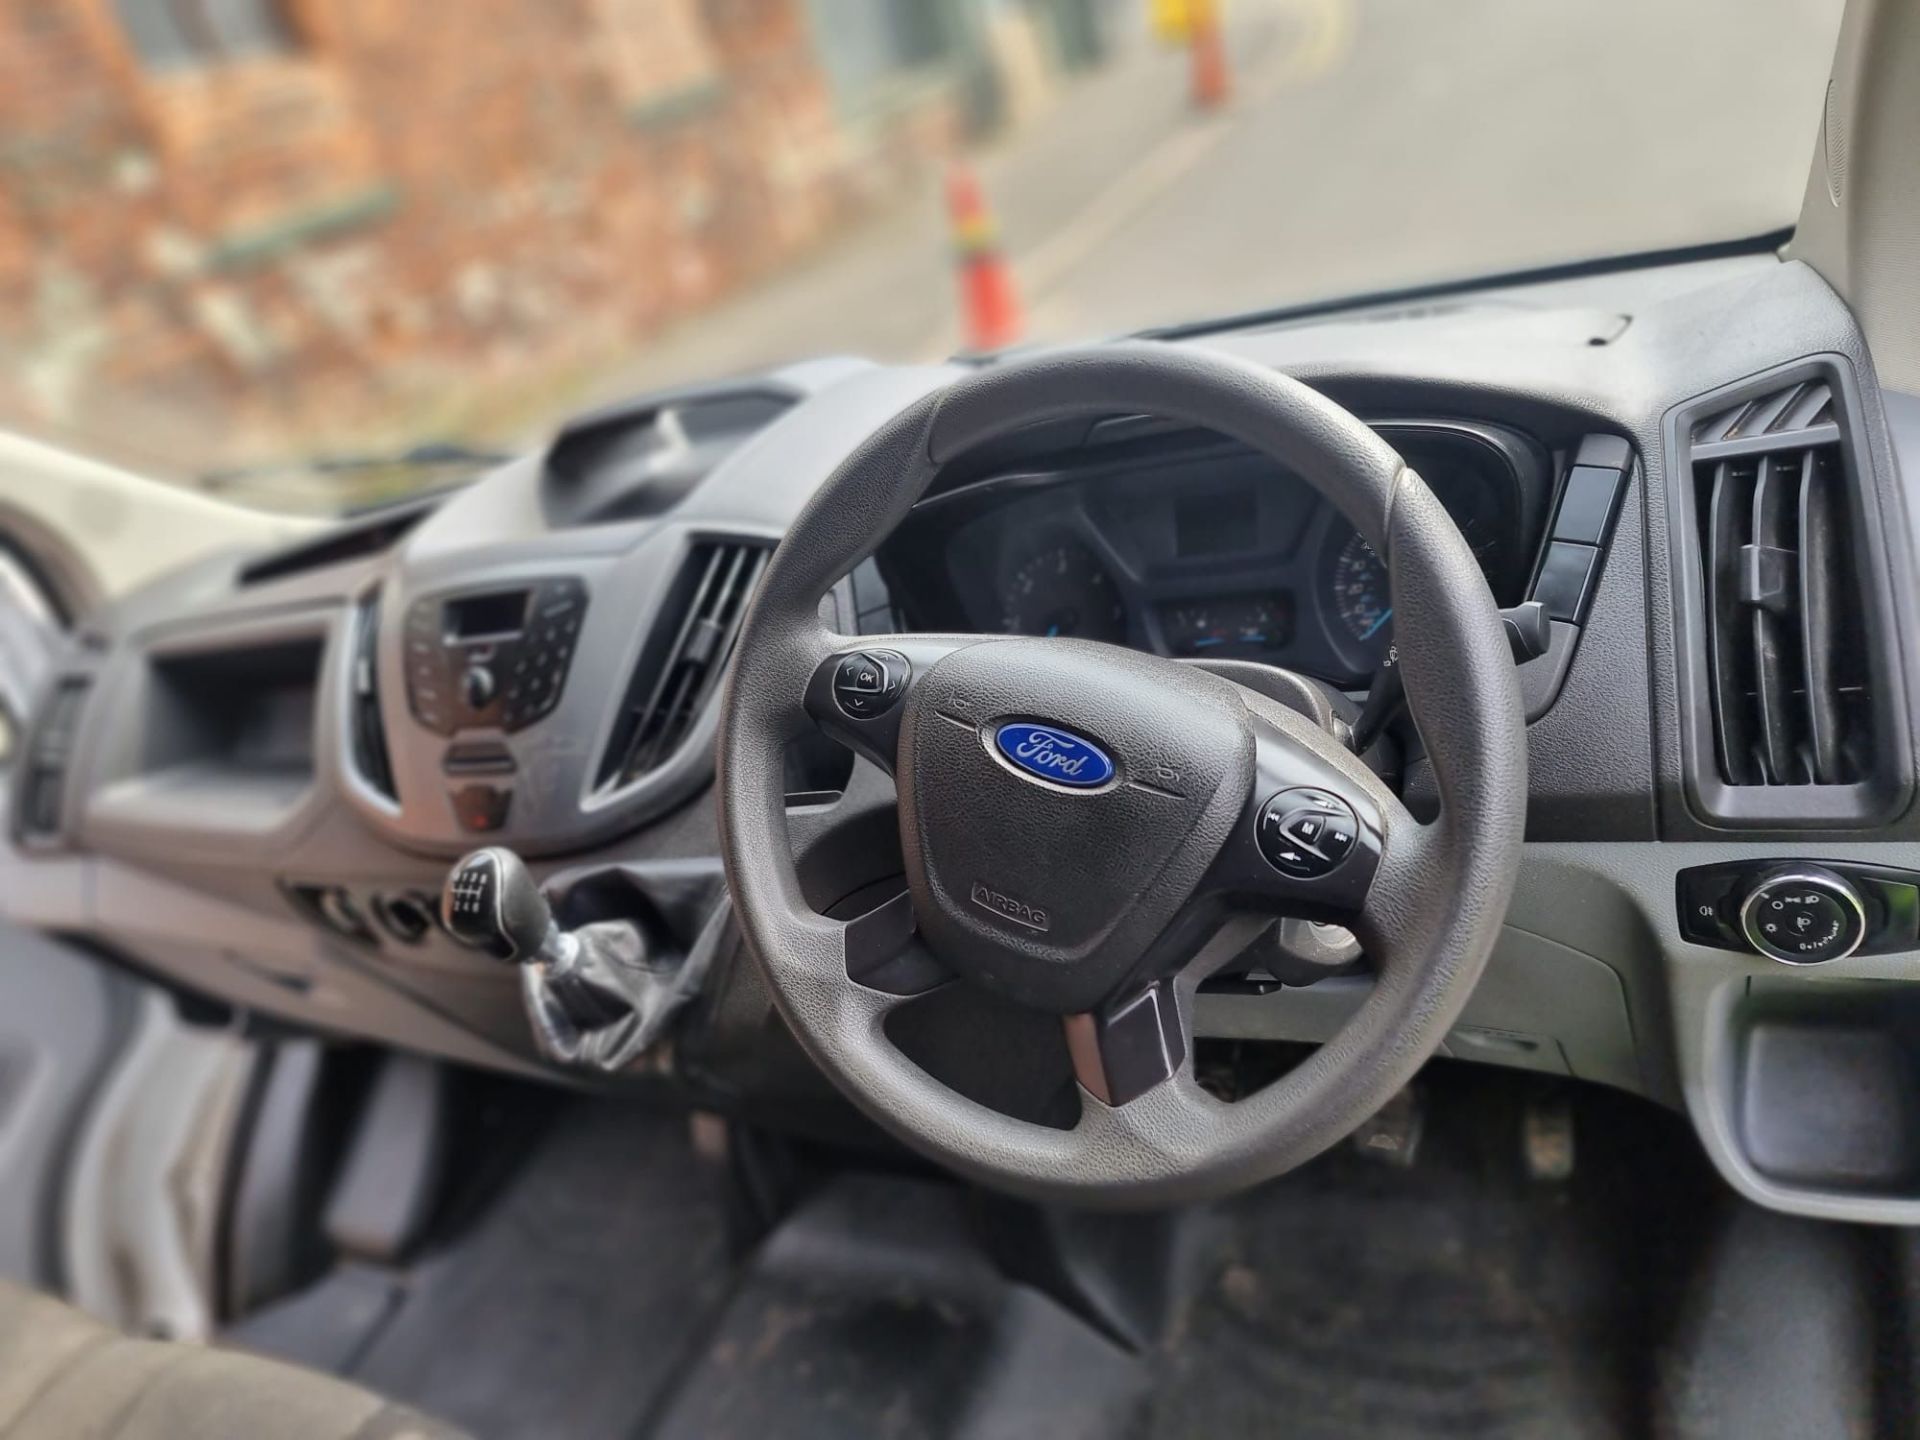 2019 Ford Transit 350 L2 Diesel FWD, 2.0 TDCi 130ps Camper Van Reg: YO19 HGL, DOR: July 2019, - Image 38 of 46